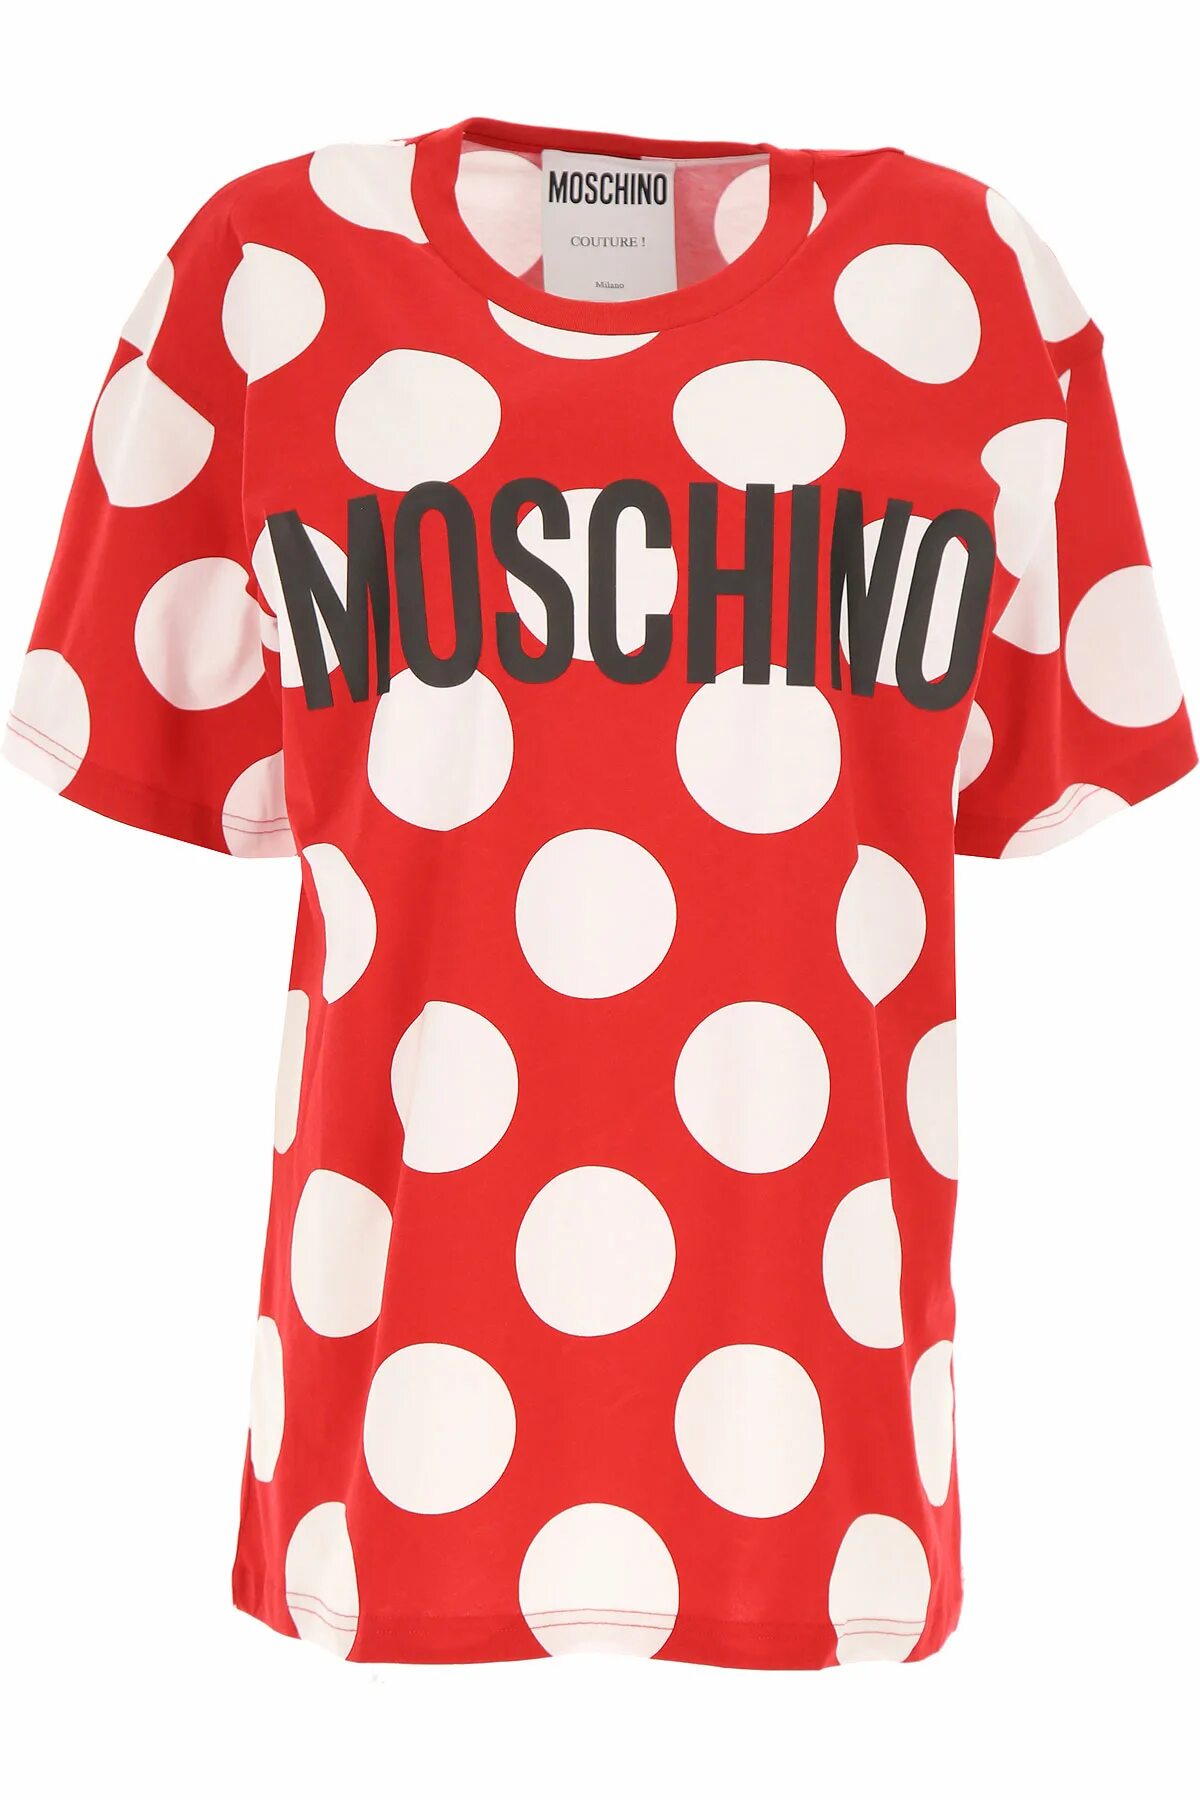 Moschino одежда 1978. Платье летнее поло Москино. Moschino женские. Moschino woman одежда.